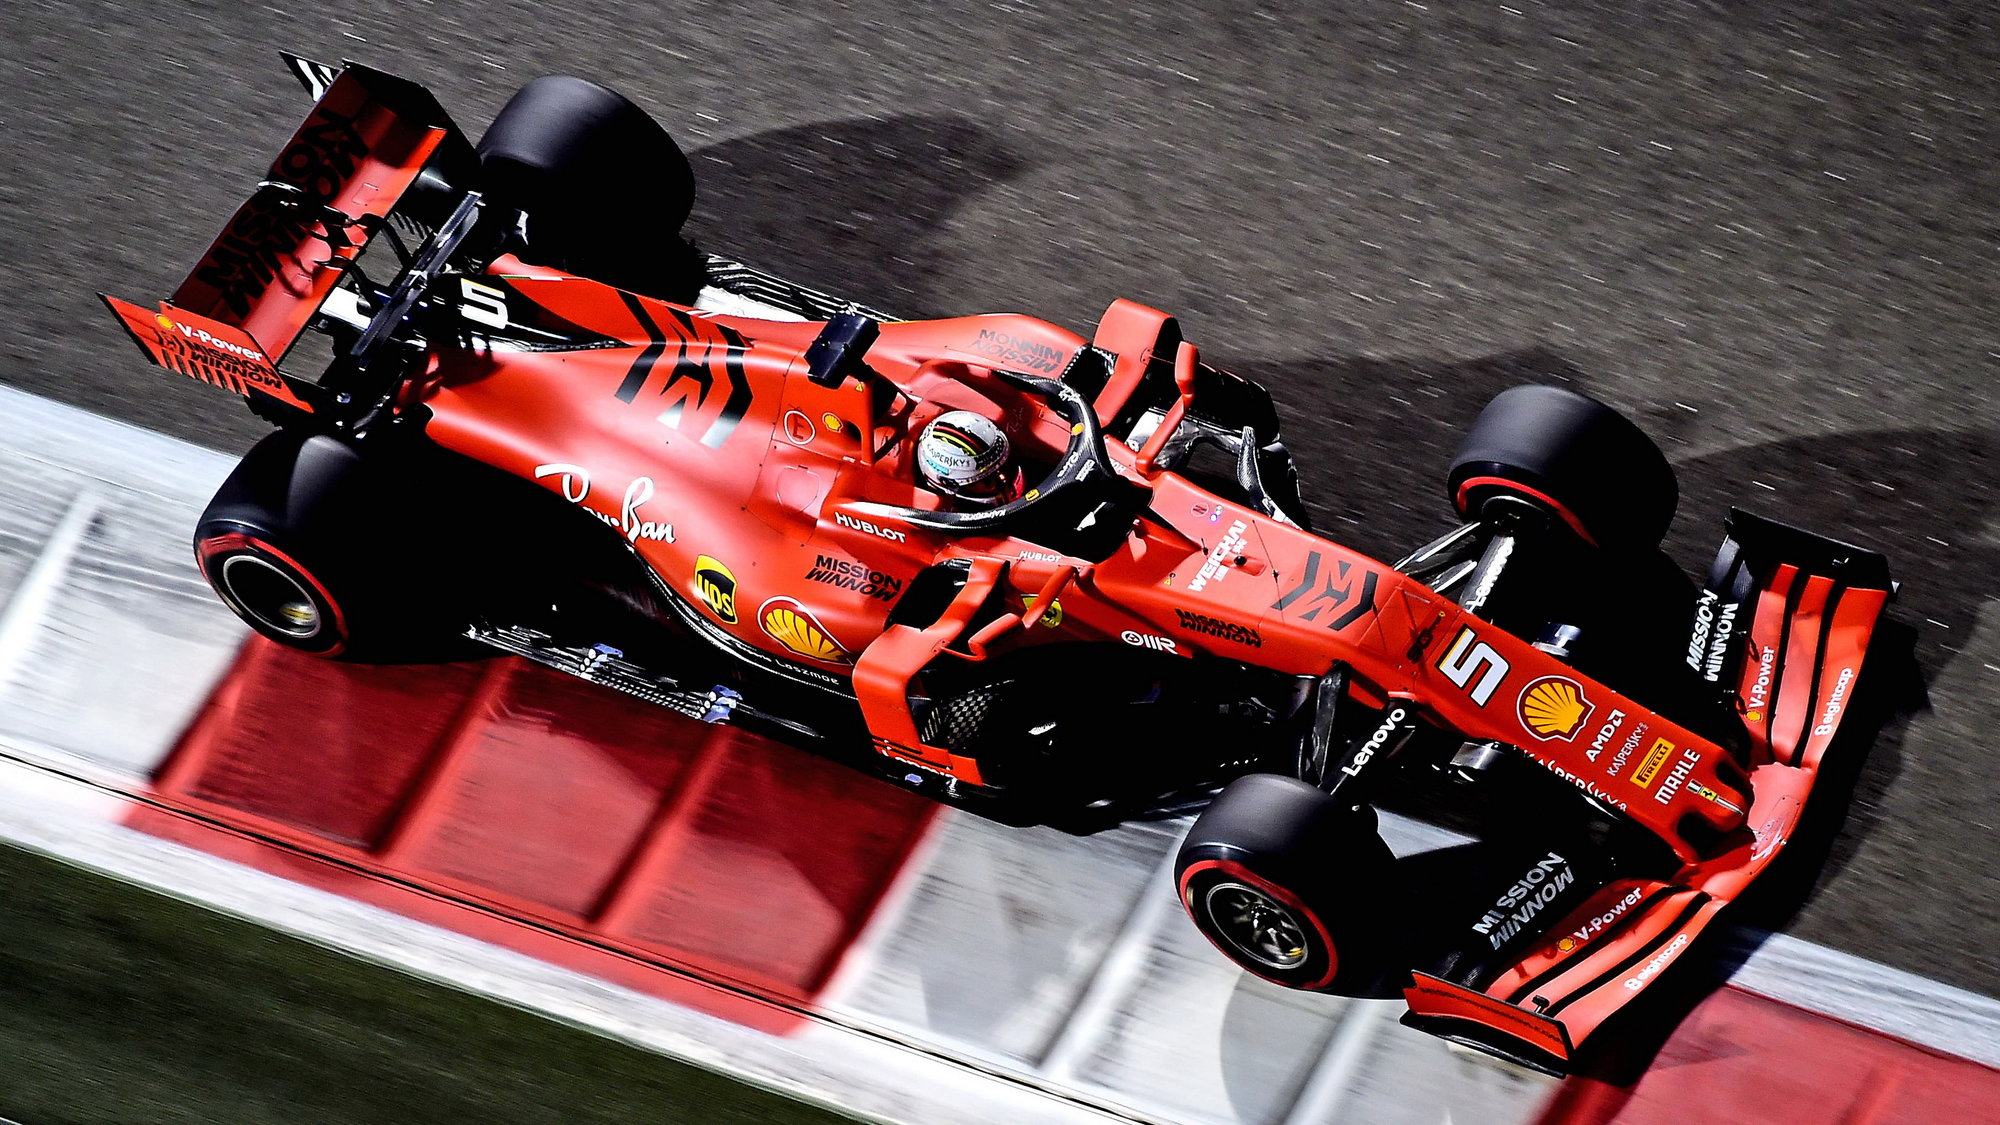 Loňské Ferrari je podle Steinera pomalejší než letošní Haas, zákaznické vozy podle něj nemají smysl